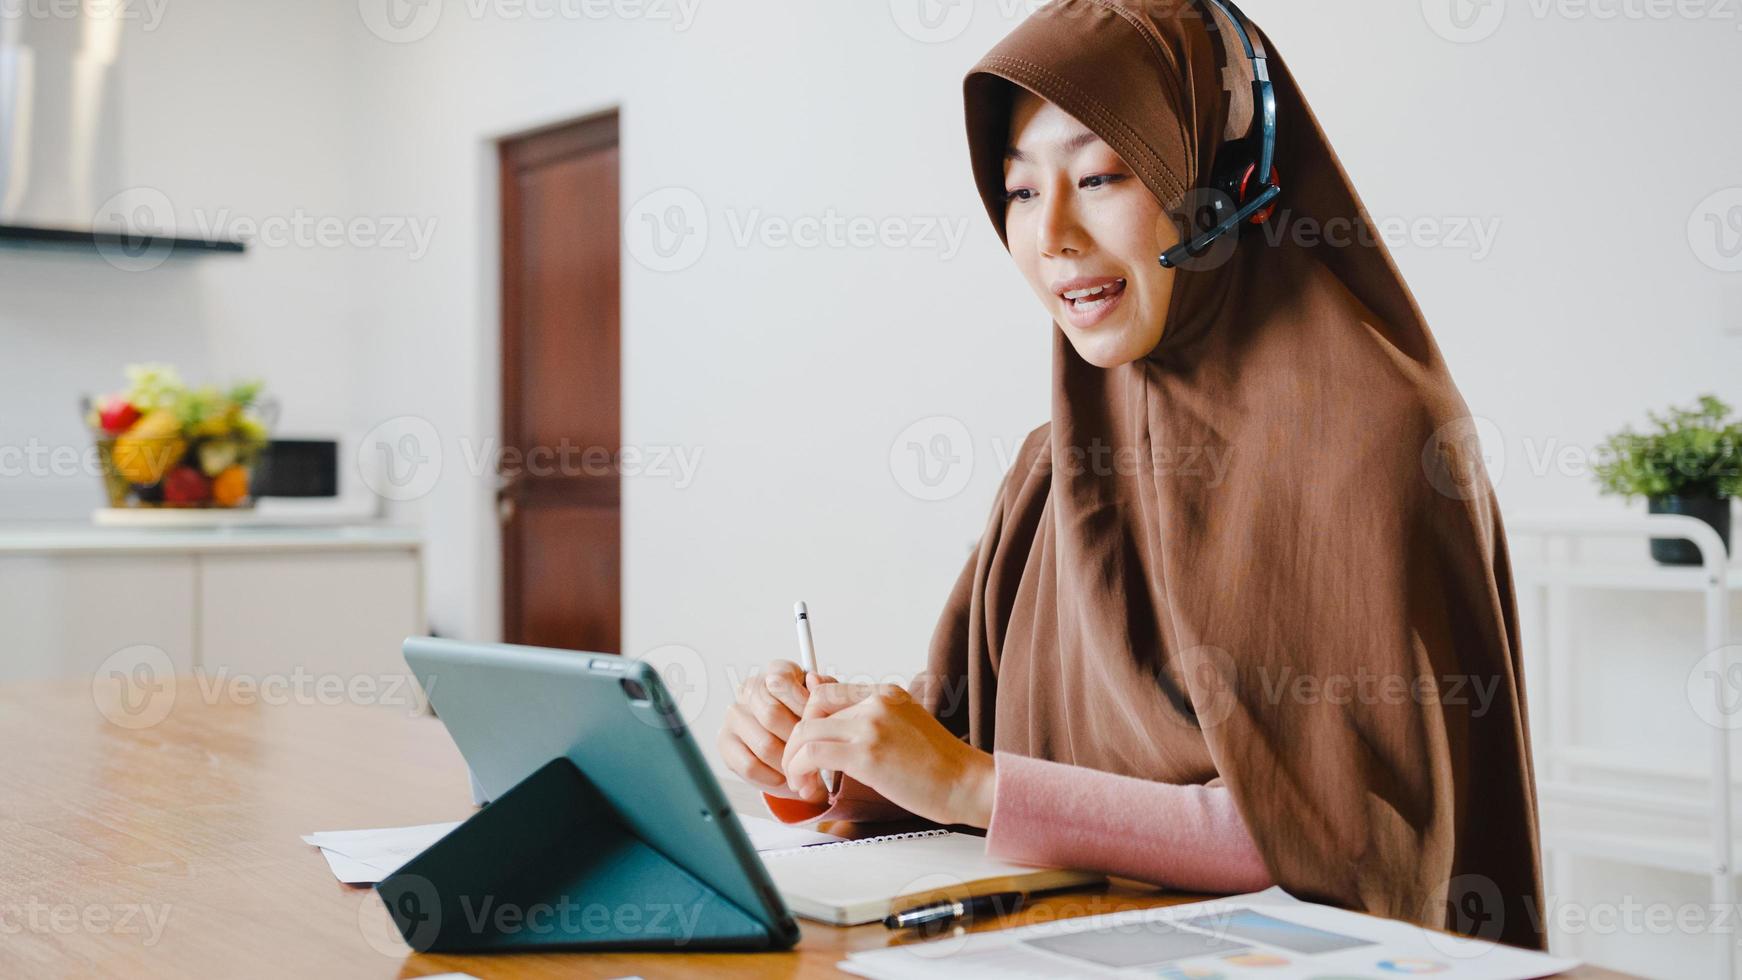 Asia dama musulmana usa auriculares con tableta digital, hable con sus colegas sobre el informe de venta en una videollamada de conferencia mientras trabaja desde casa en la cocina. distanciamiento social, cuarentena por coronavirus. foto